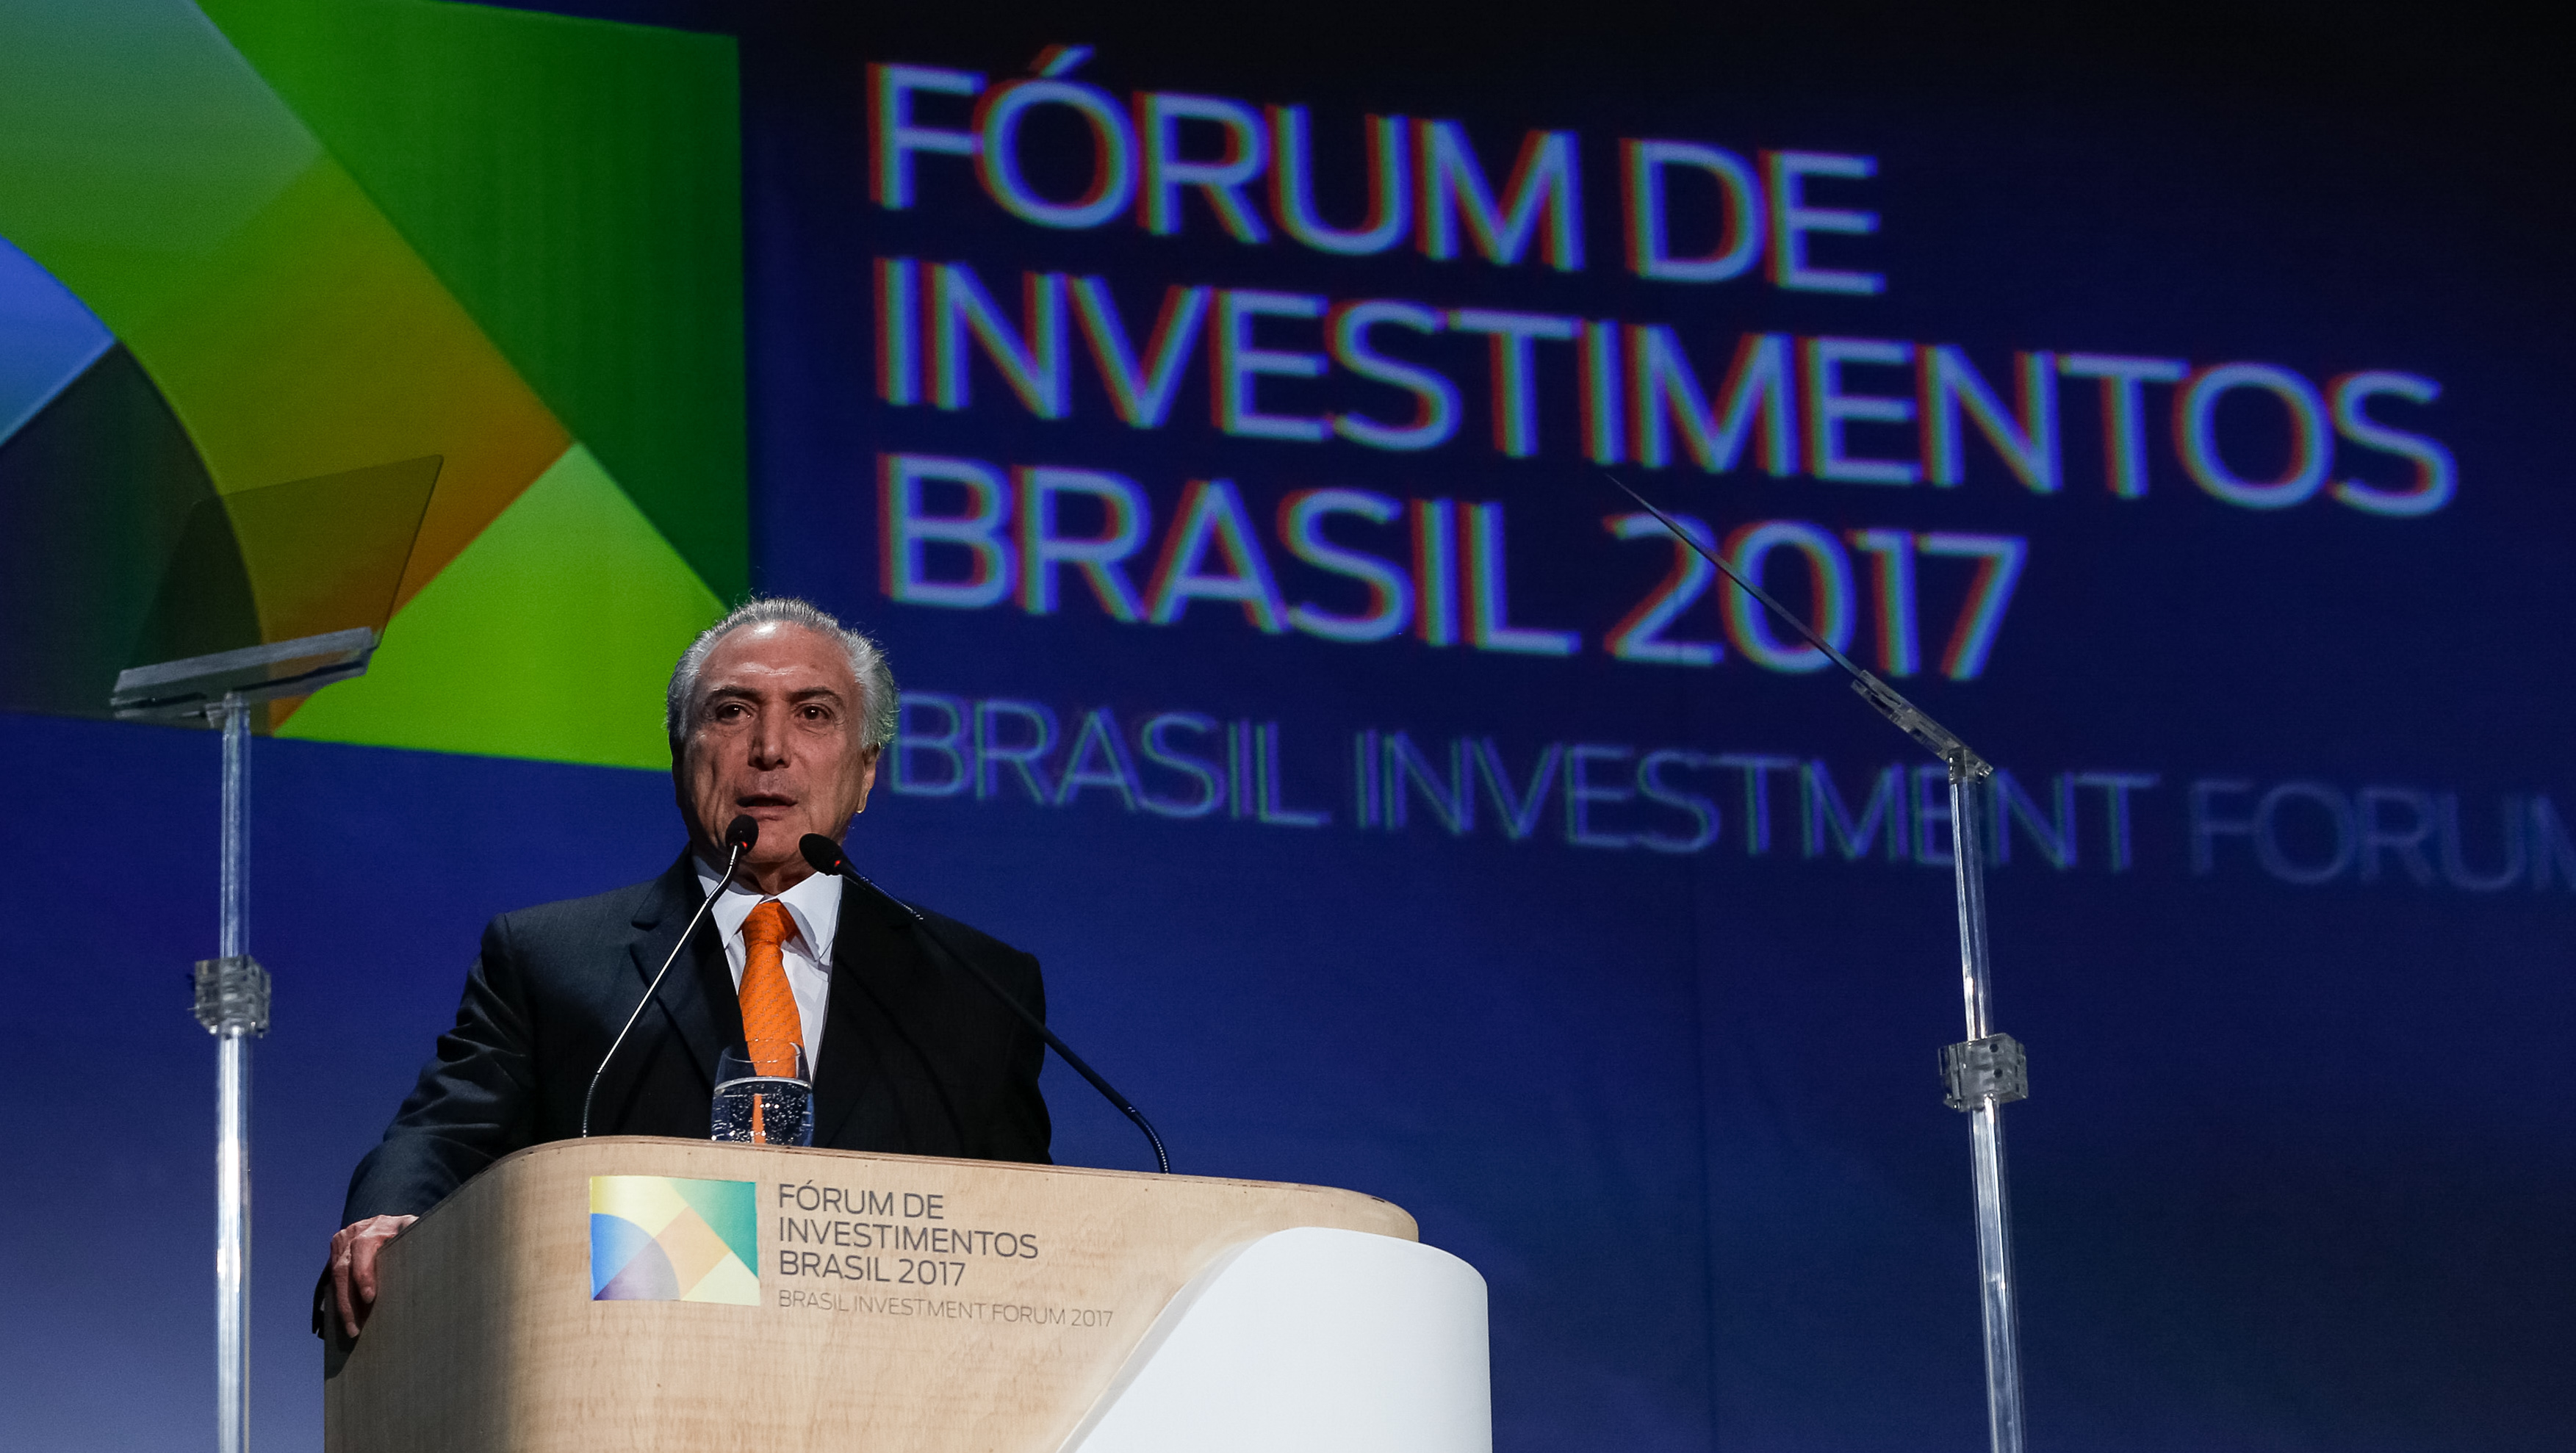 30/05/2017- São Paulo - SP, Brasil-  Abertura oficial do Fórum de Investimentos Brasil 2017. Discurso do Presidente da República, Michel Temer.
Foto: Marcos Corrêa/PR